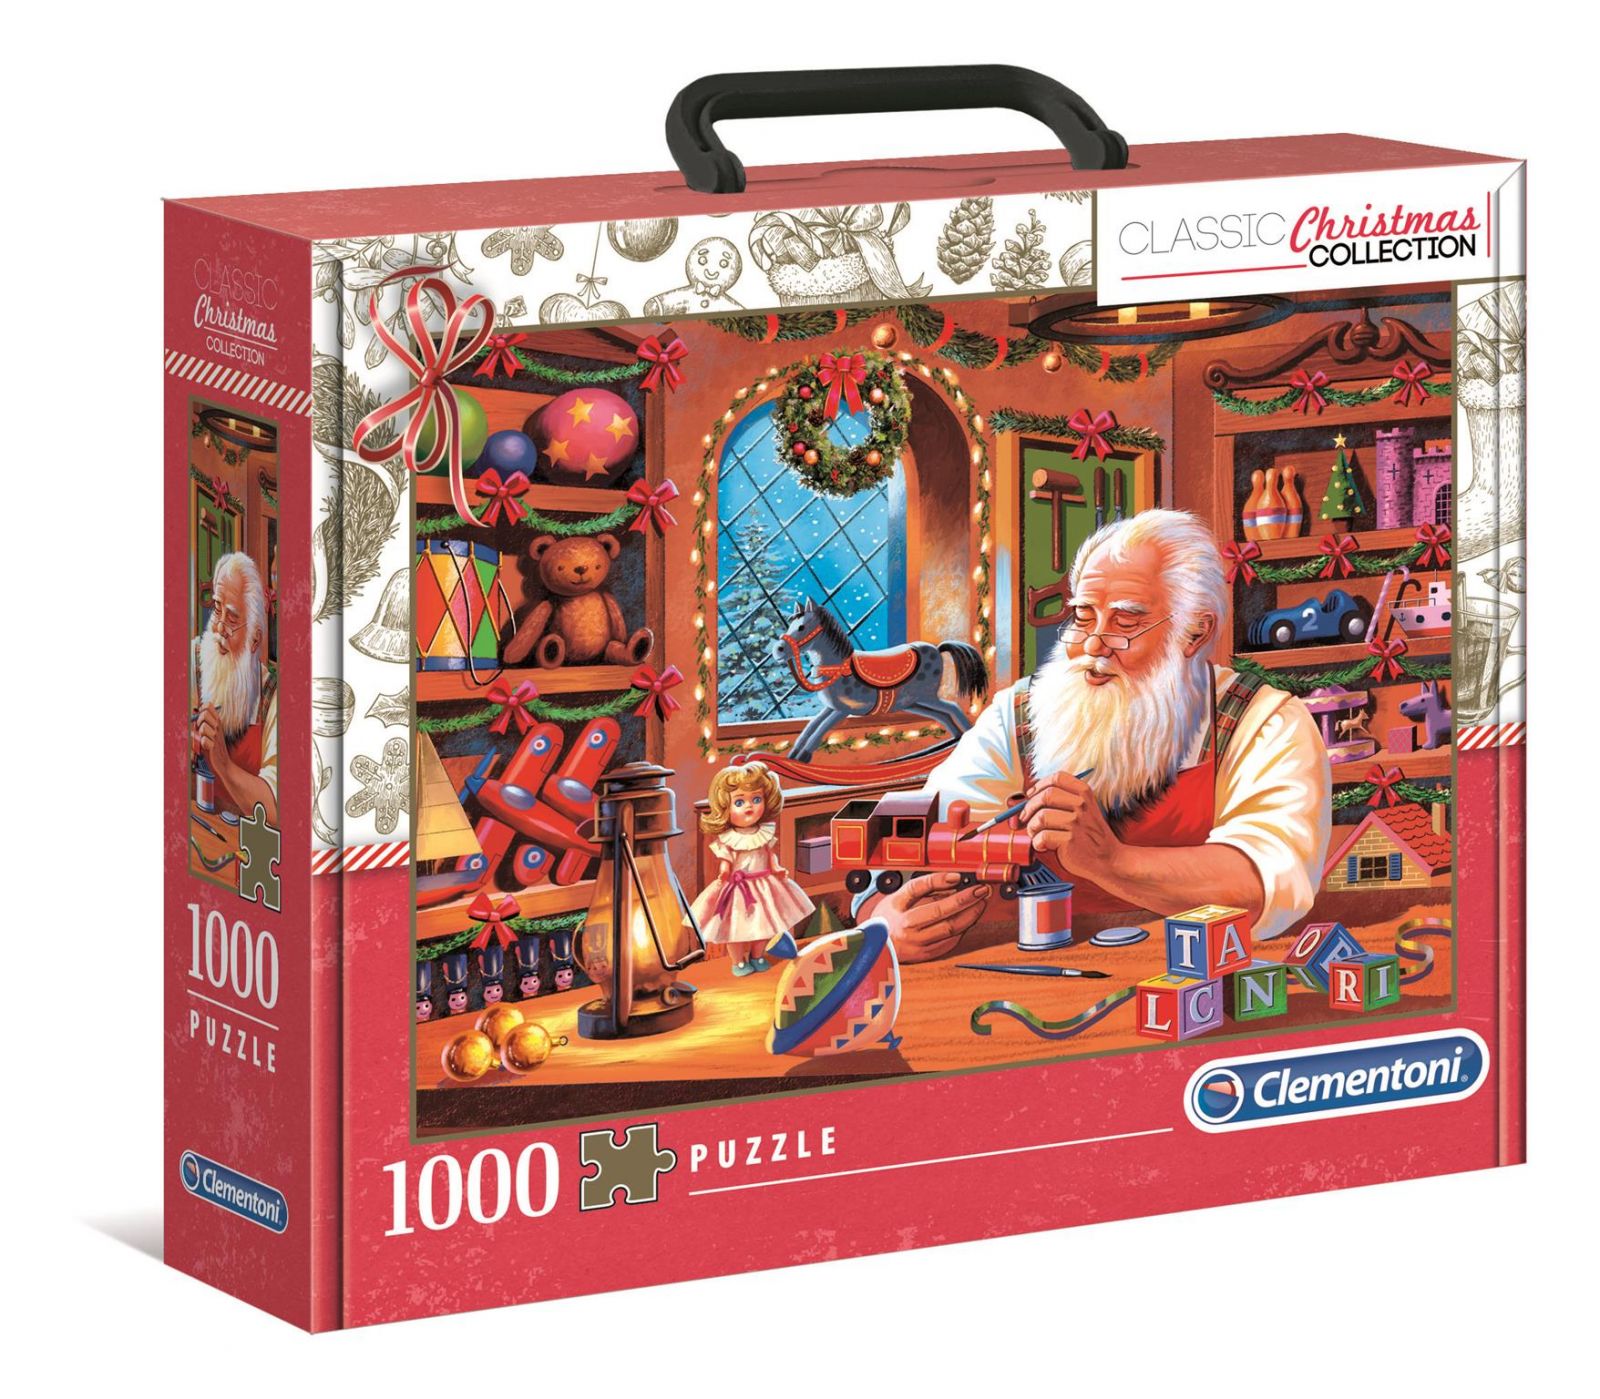 Clementoni Puzzle 1000 dílků - Krátký příběh - Sváteční edice 39584